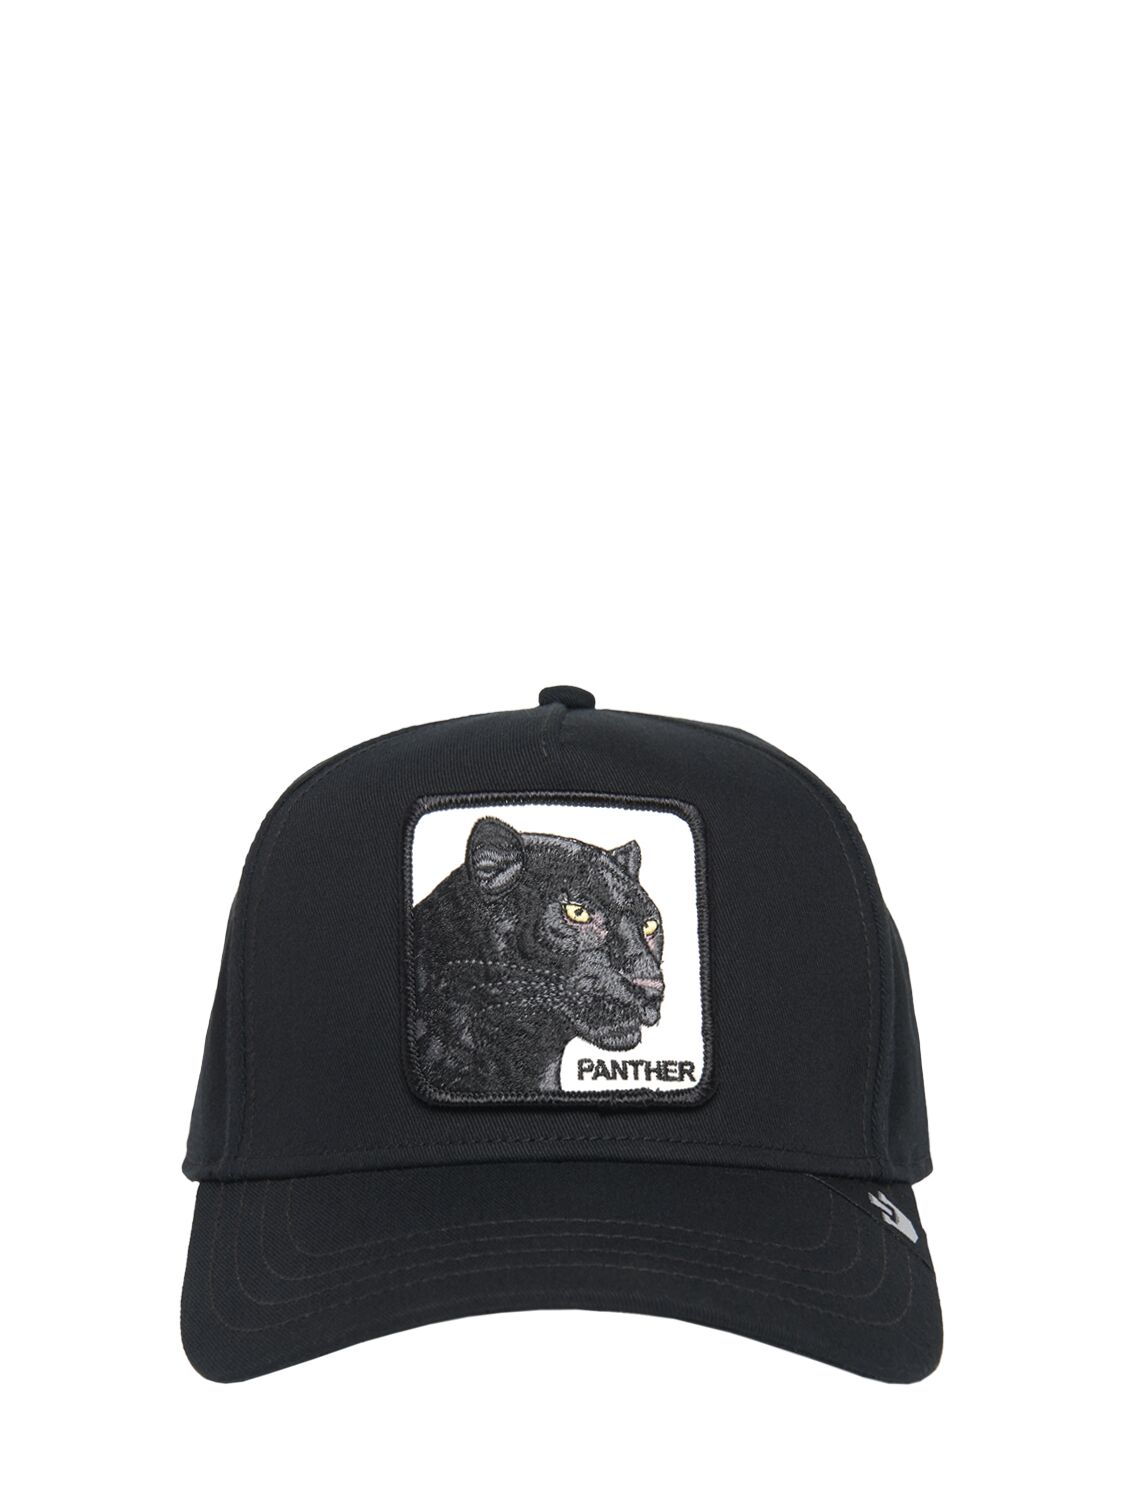 Panther 100 Baseball Cap